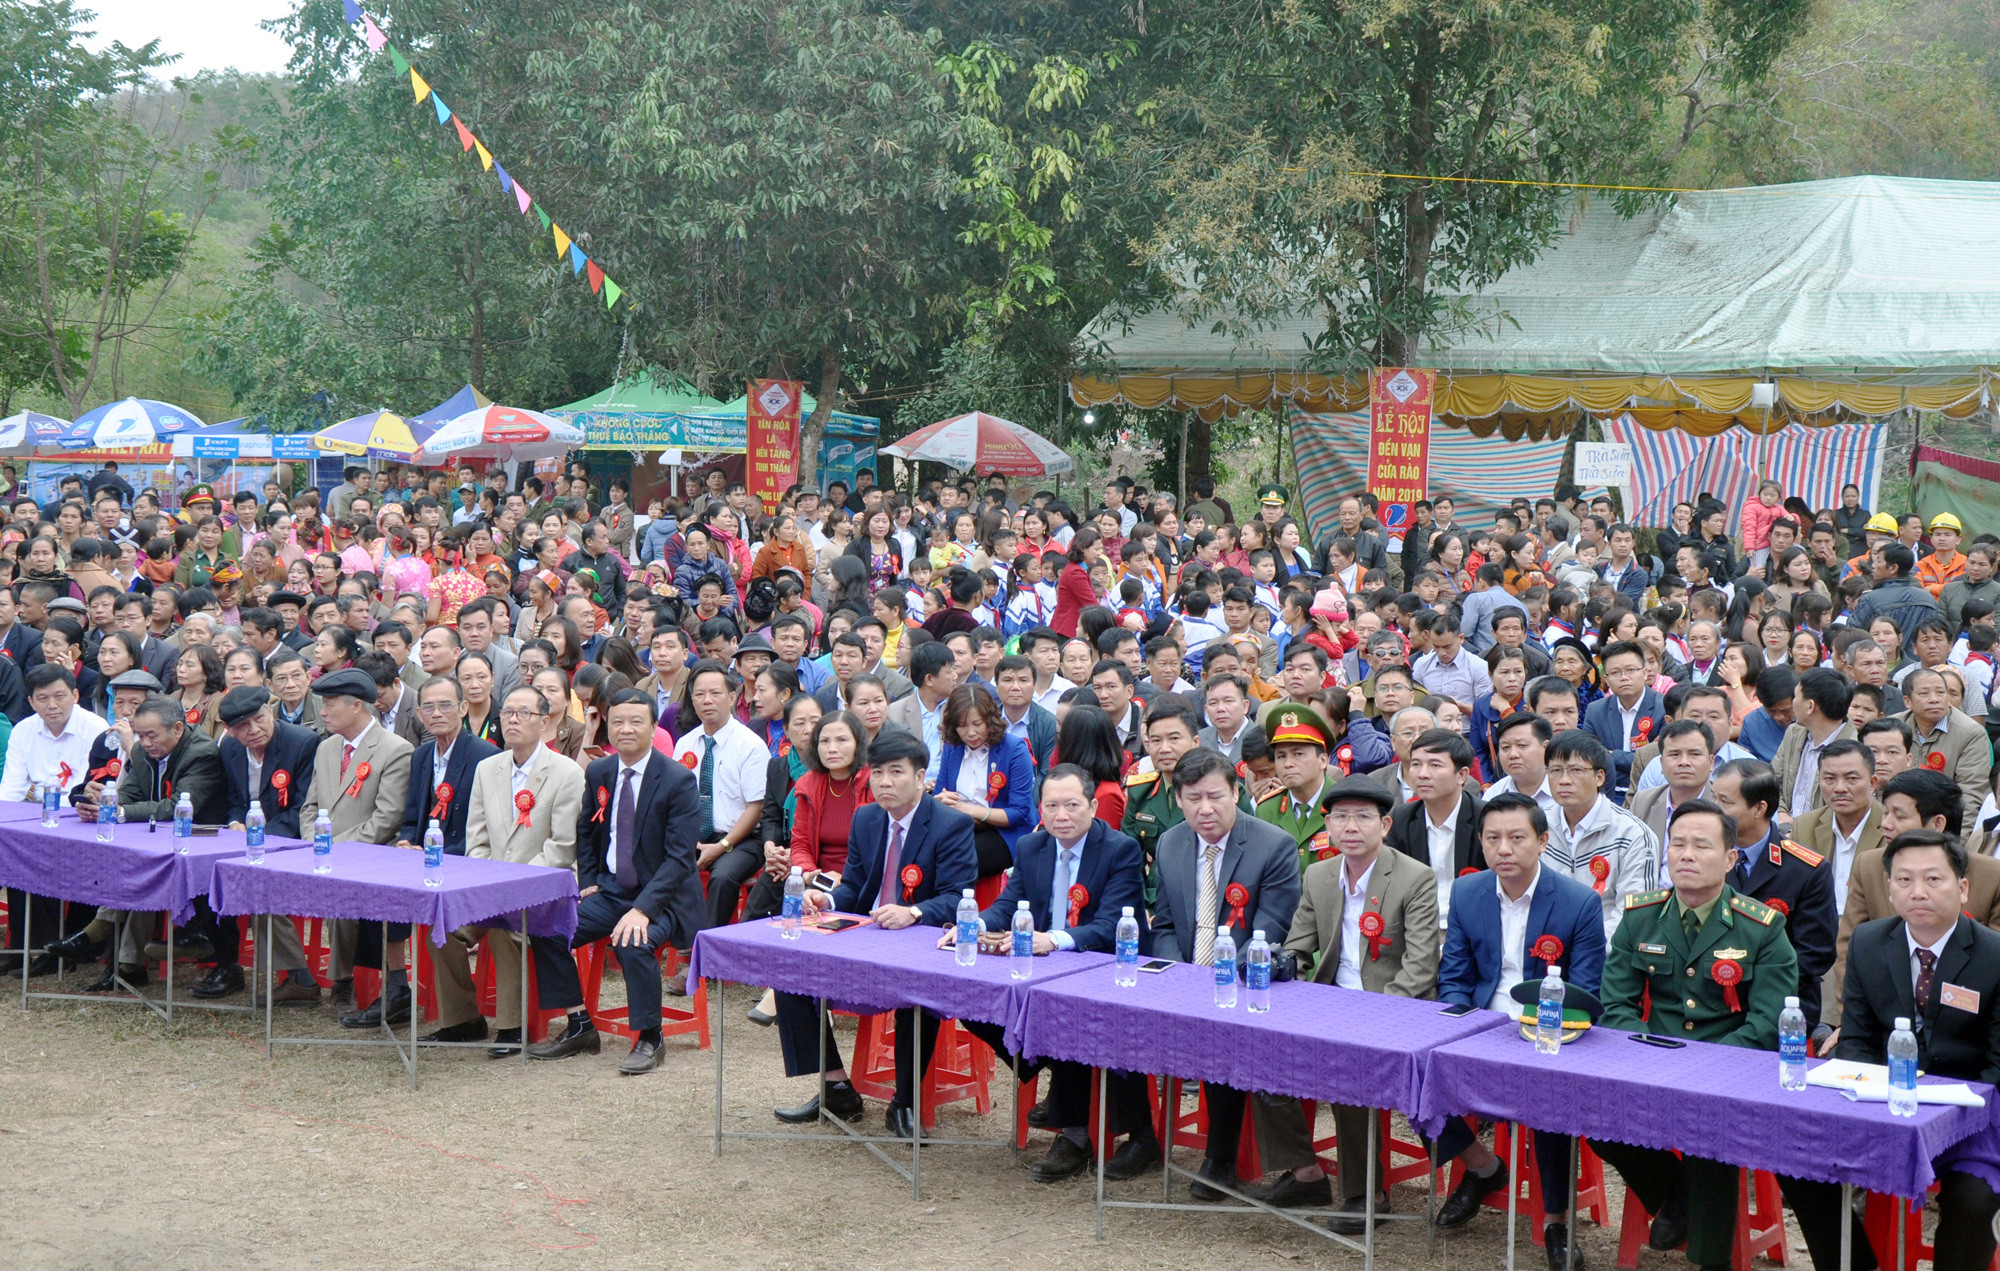 Tham dự lễ khai mạc có lãnh đạo Sở Văn hóa và Thể thao, Ban Dân tộc tỉnh, huyện Tương Dương cùng nhân dân khắp toàn huyện và du khách gần xa.